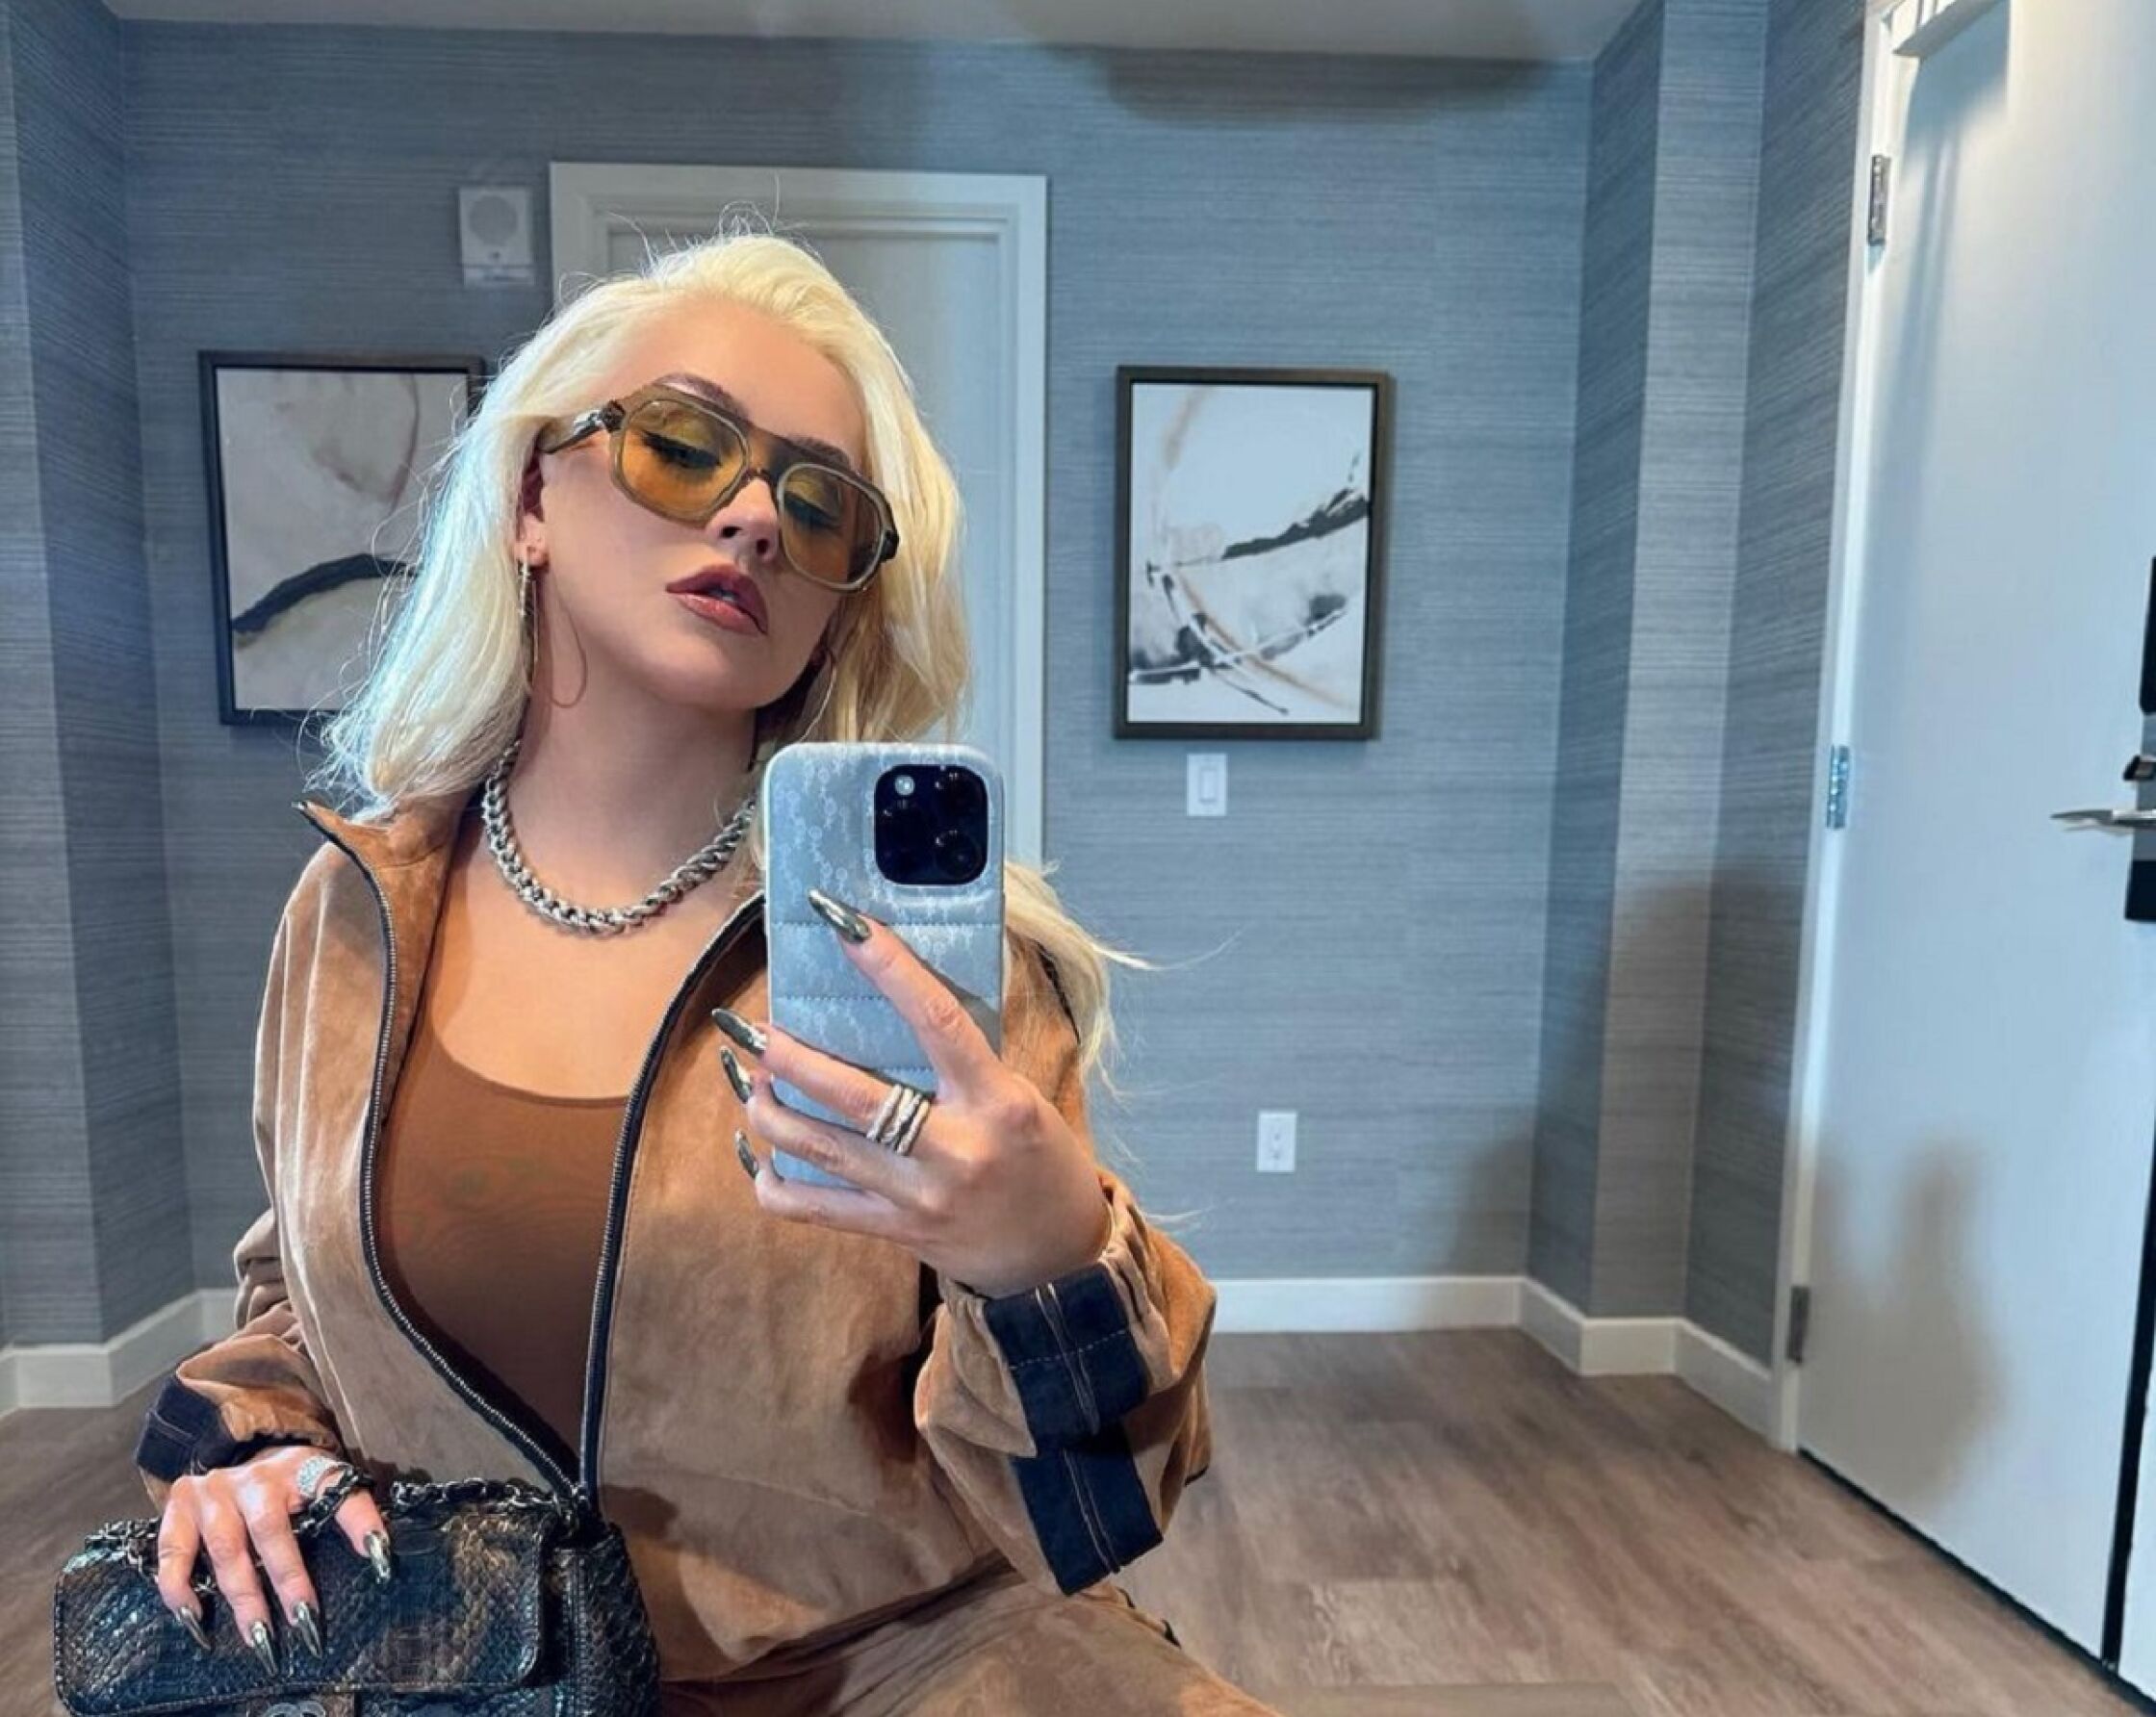 Cantora Christina Aguilera explosiva: "consigo ter orgasmos de quatro formas diferentes"